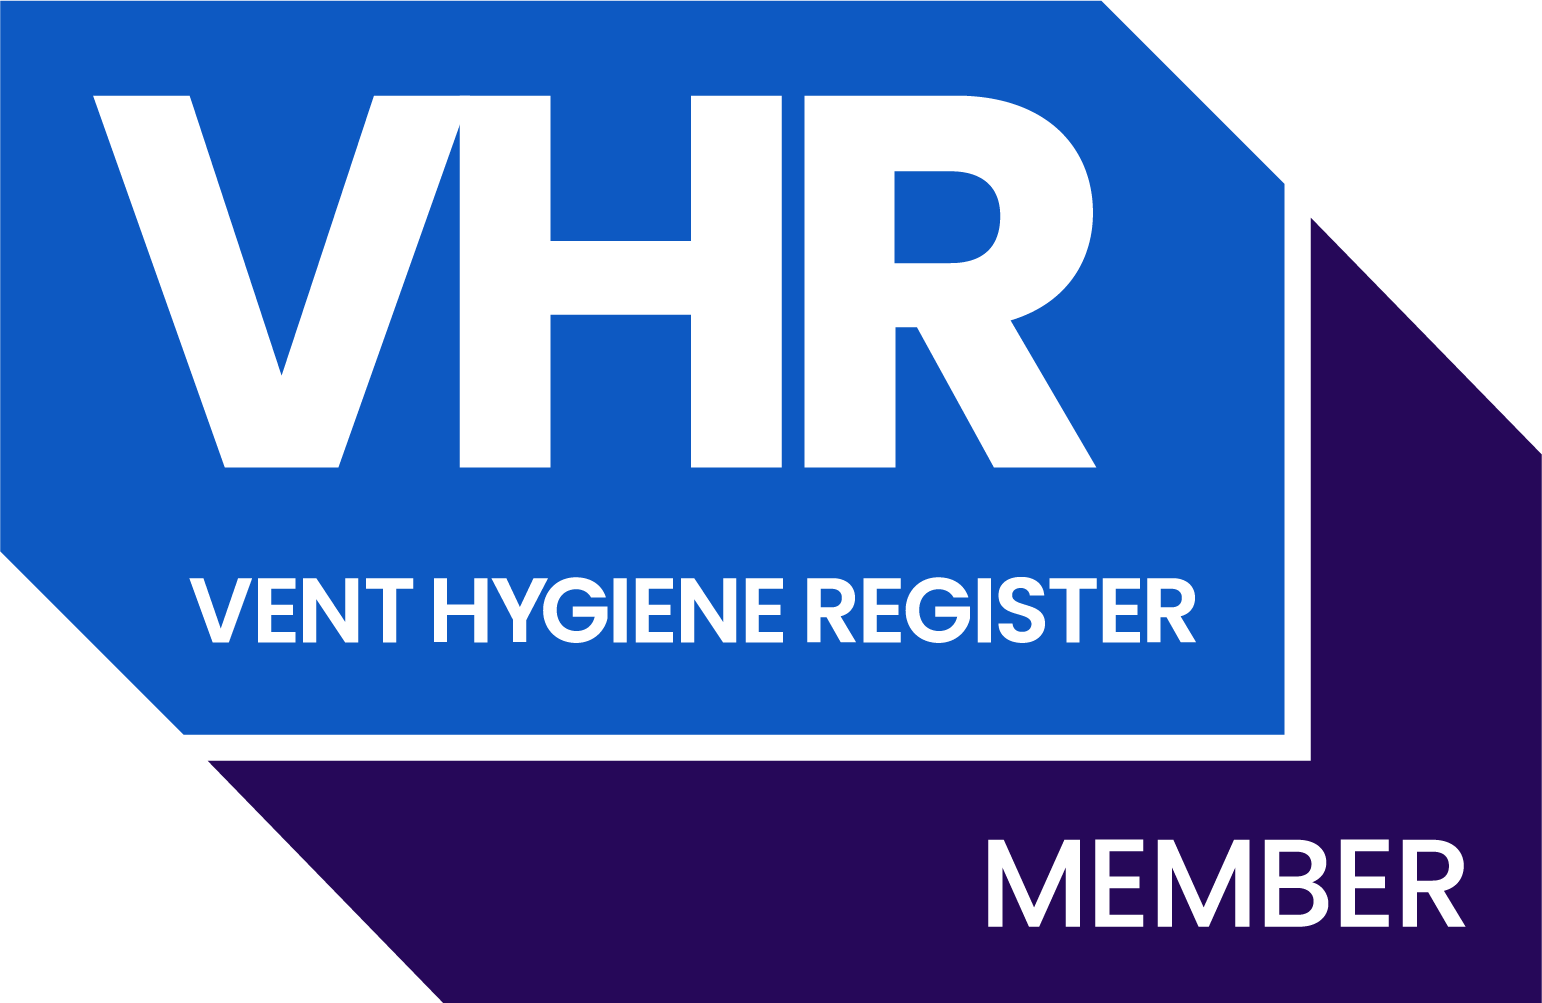 Vent hygiene register logo